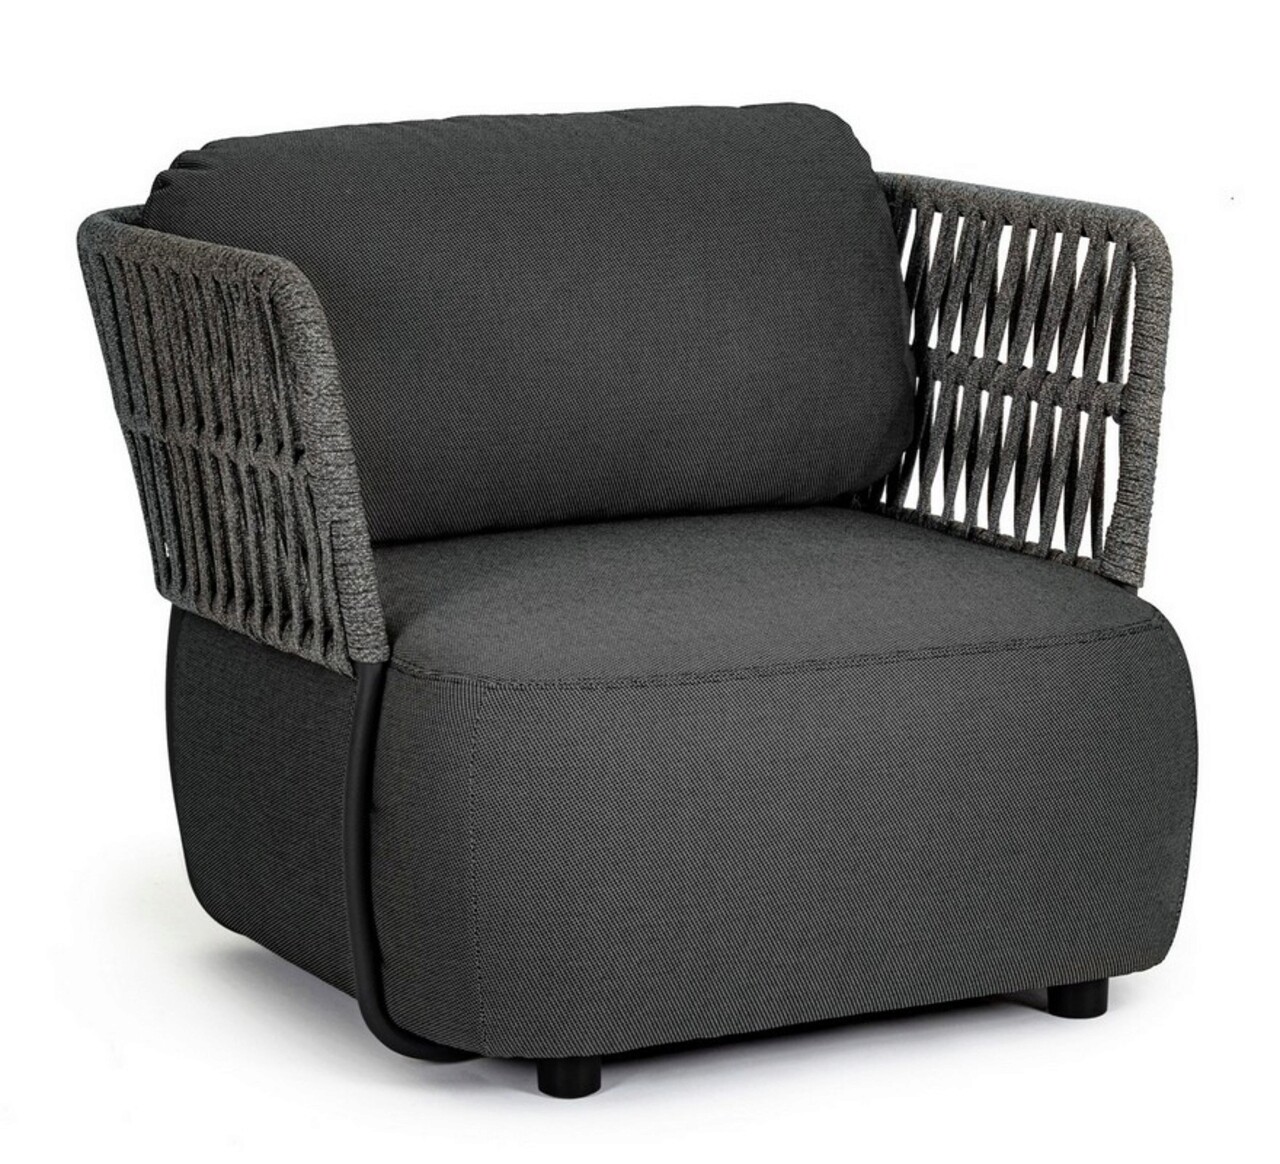 Palmer Kerti/terasz fotel, Bizzotto, 92 x 86 x 79 cm, alumínium/olefin szövet, szénszürke/antracit szürke